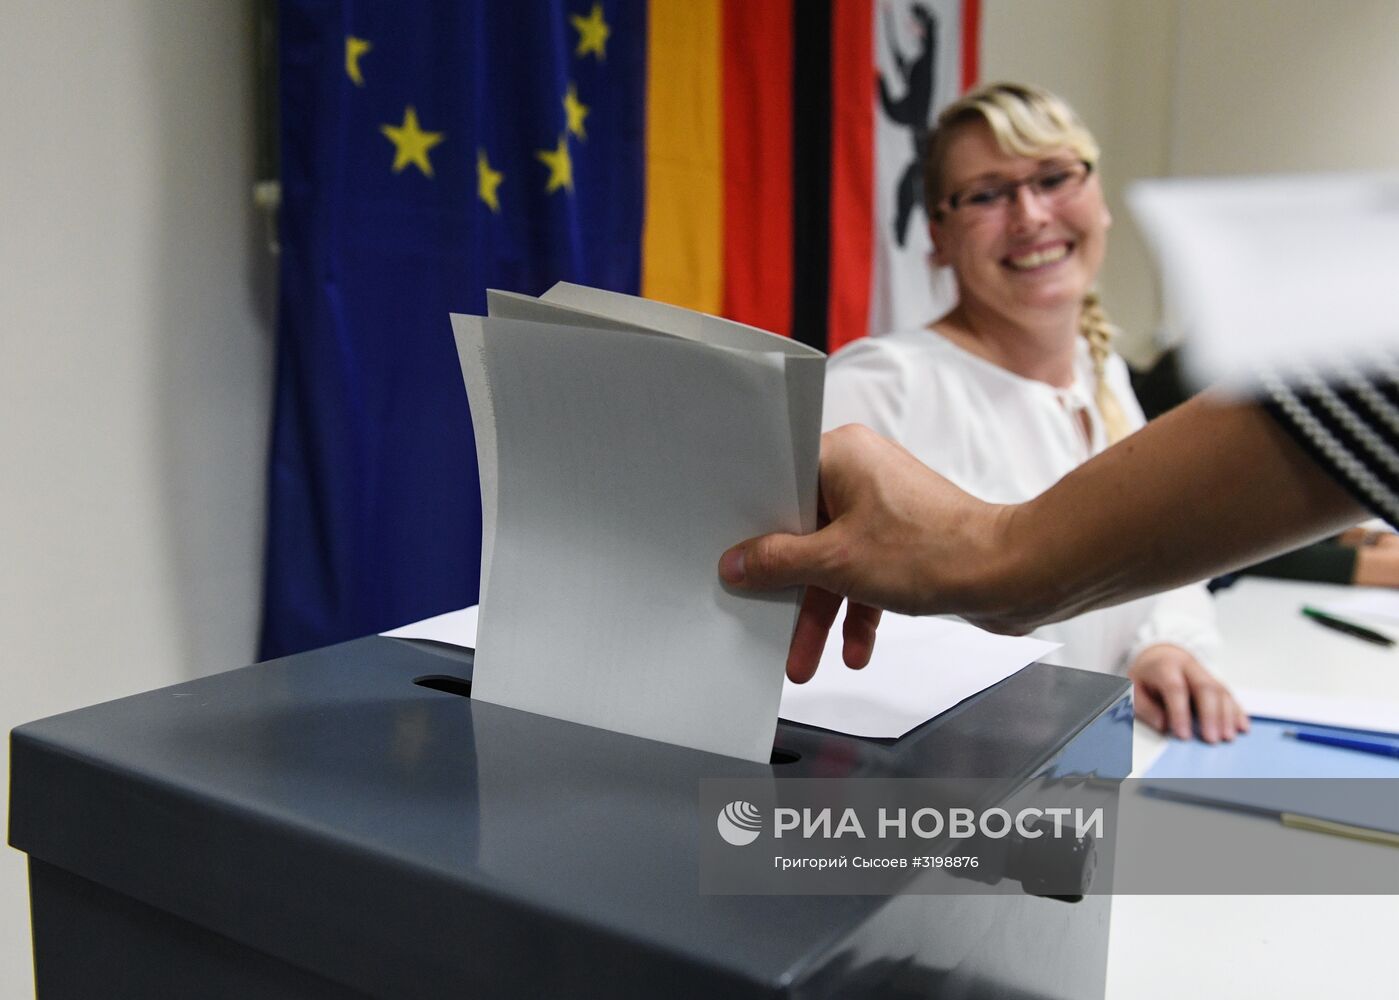 Парламентские выборы в Германии